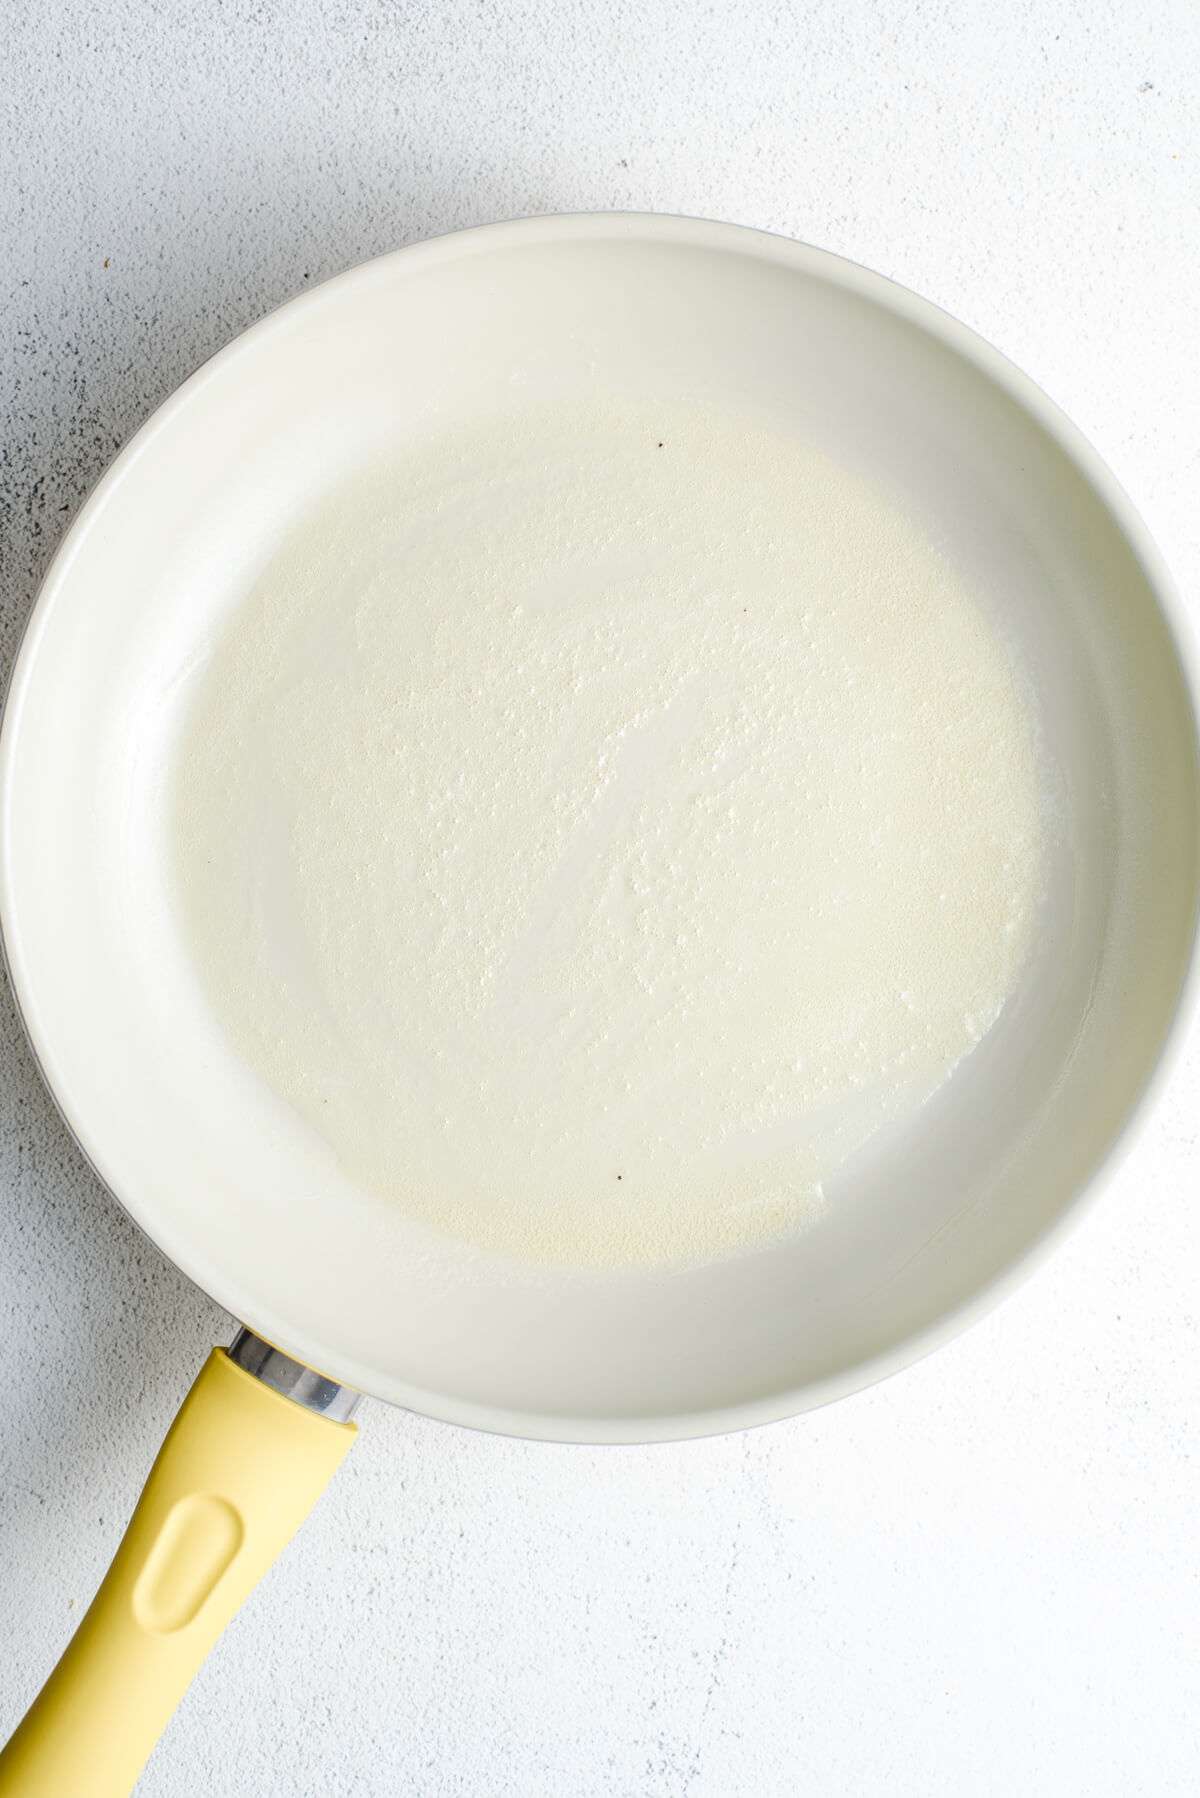 butter foaming in skillet